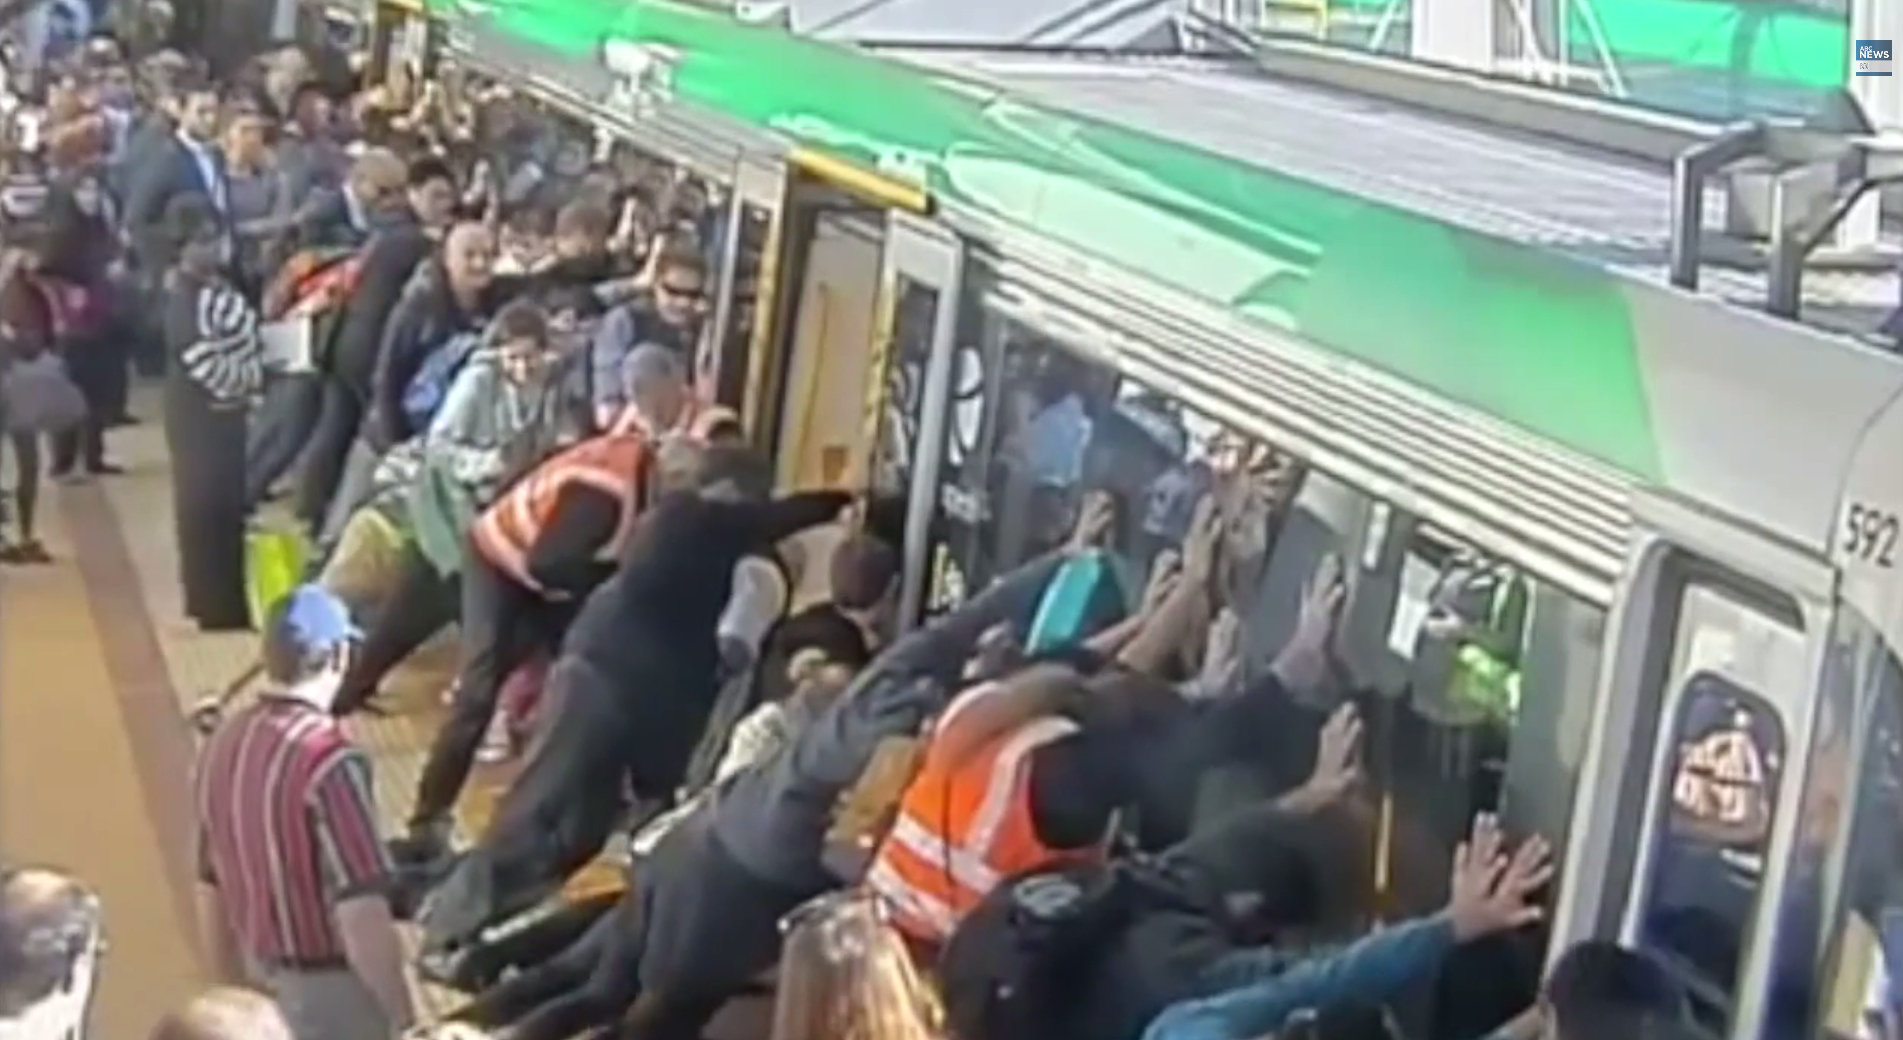 Πριν από λίγο: Κόλλησε το πόδι του στο κενό της αποβάθρας και οι συνεπιβάτες του σήκωσαν το τρένο! (video)